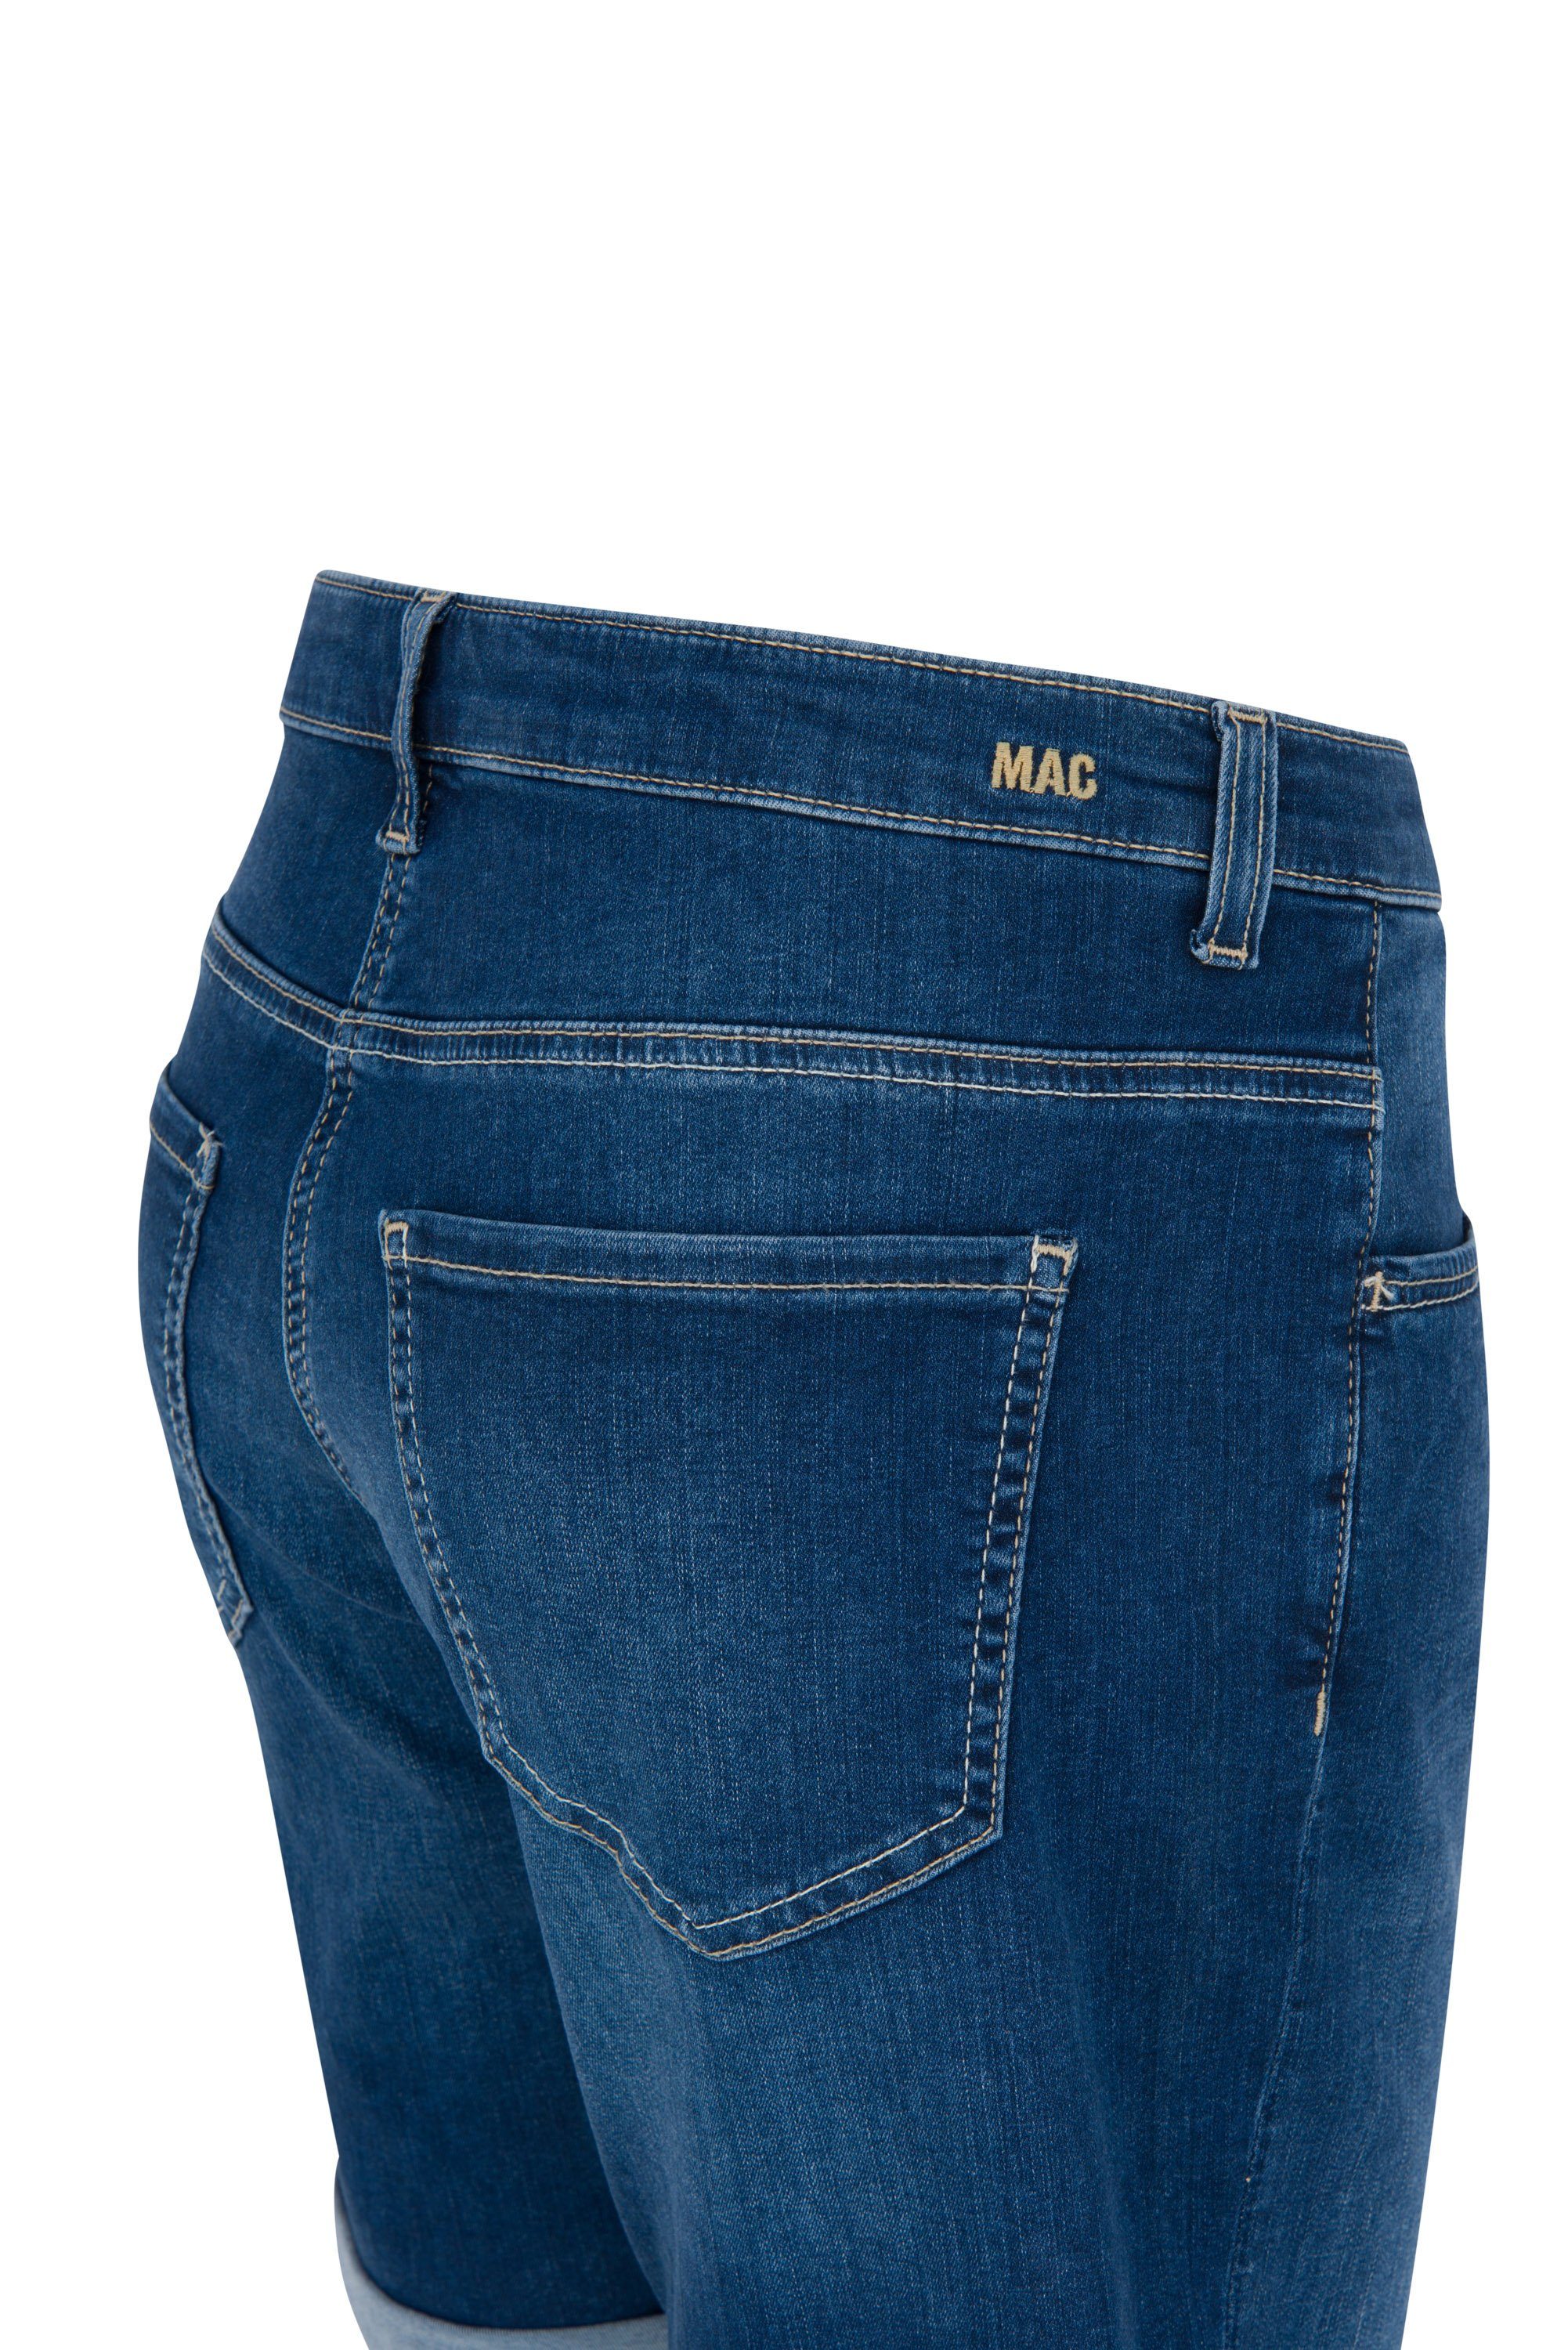 MAC SUMMER Stretch-Jeans SHORTY wash 2387-90-0396 MAC D844 basic